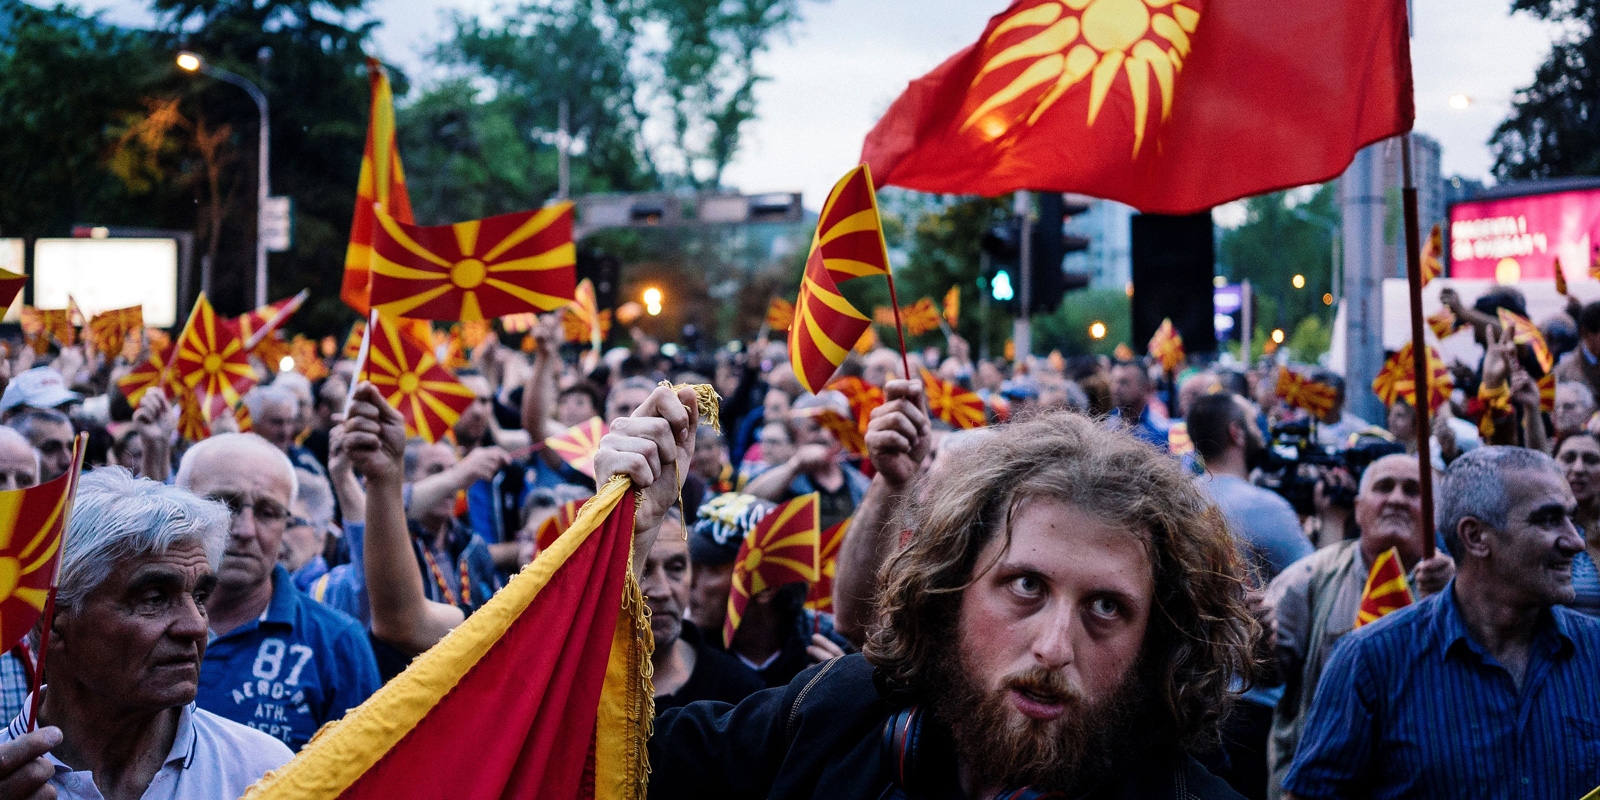 Νίμιτζ προς Σκόπια: «Δεχθείτε να παραλάβετε την Μακεδονία γιατί δεν θα βρεθεί άλλη ελληνική κυβέρνηση να σας την δώσει»